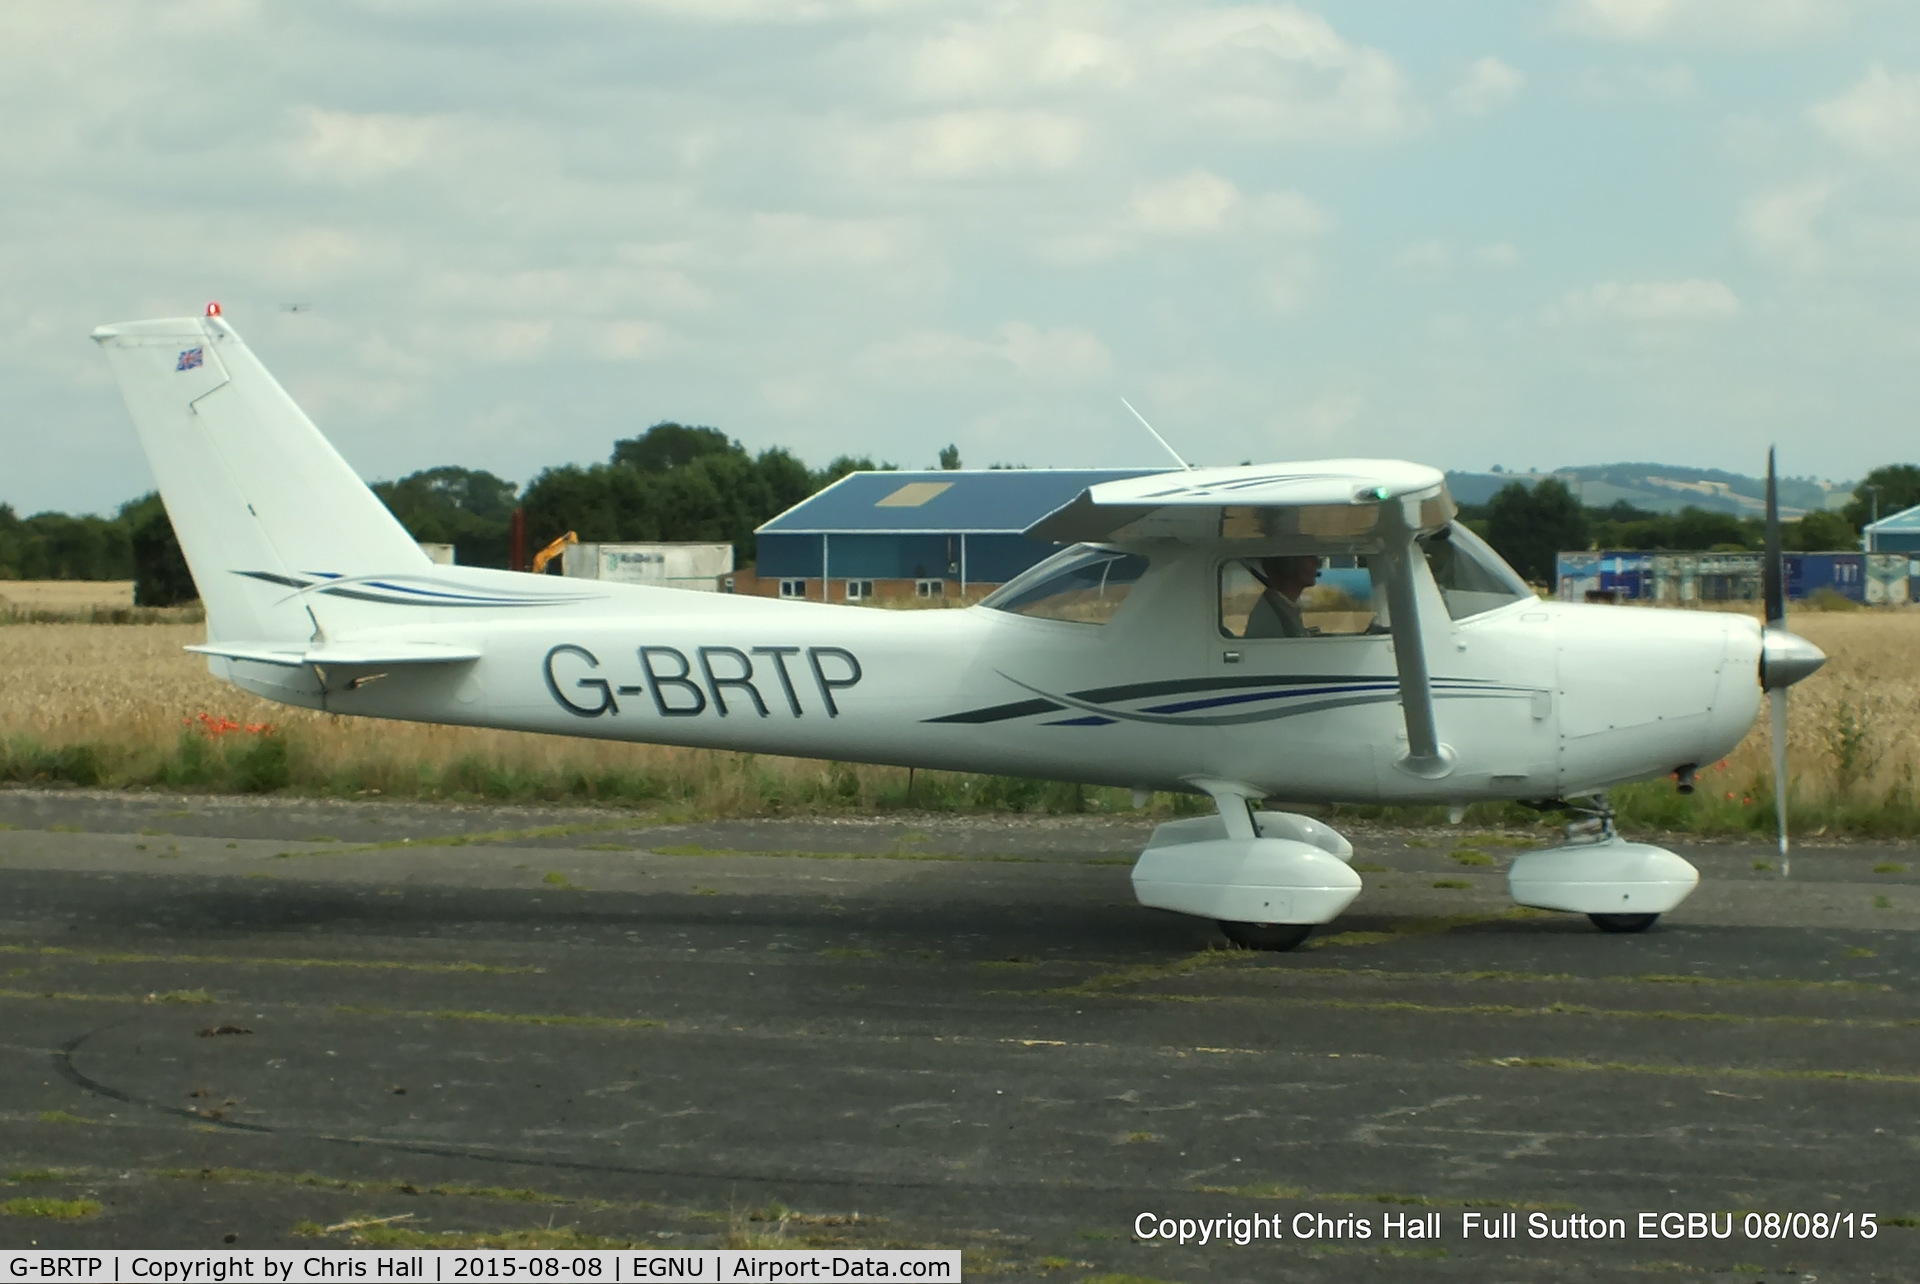 G-BRTP, 1979 Cessna 152 C/N 152-81275, at the Vale of York LAA strut flyin, Full Sutton